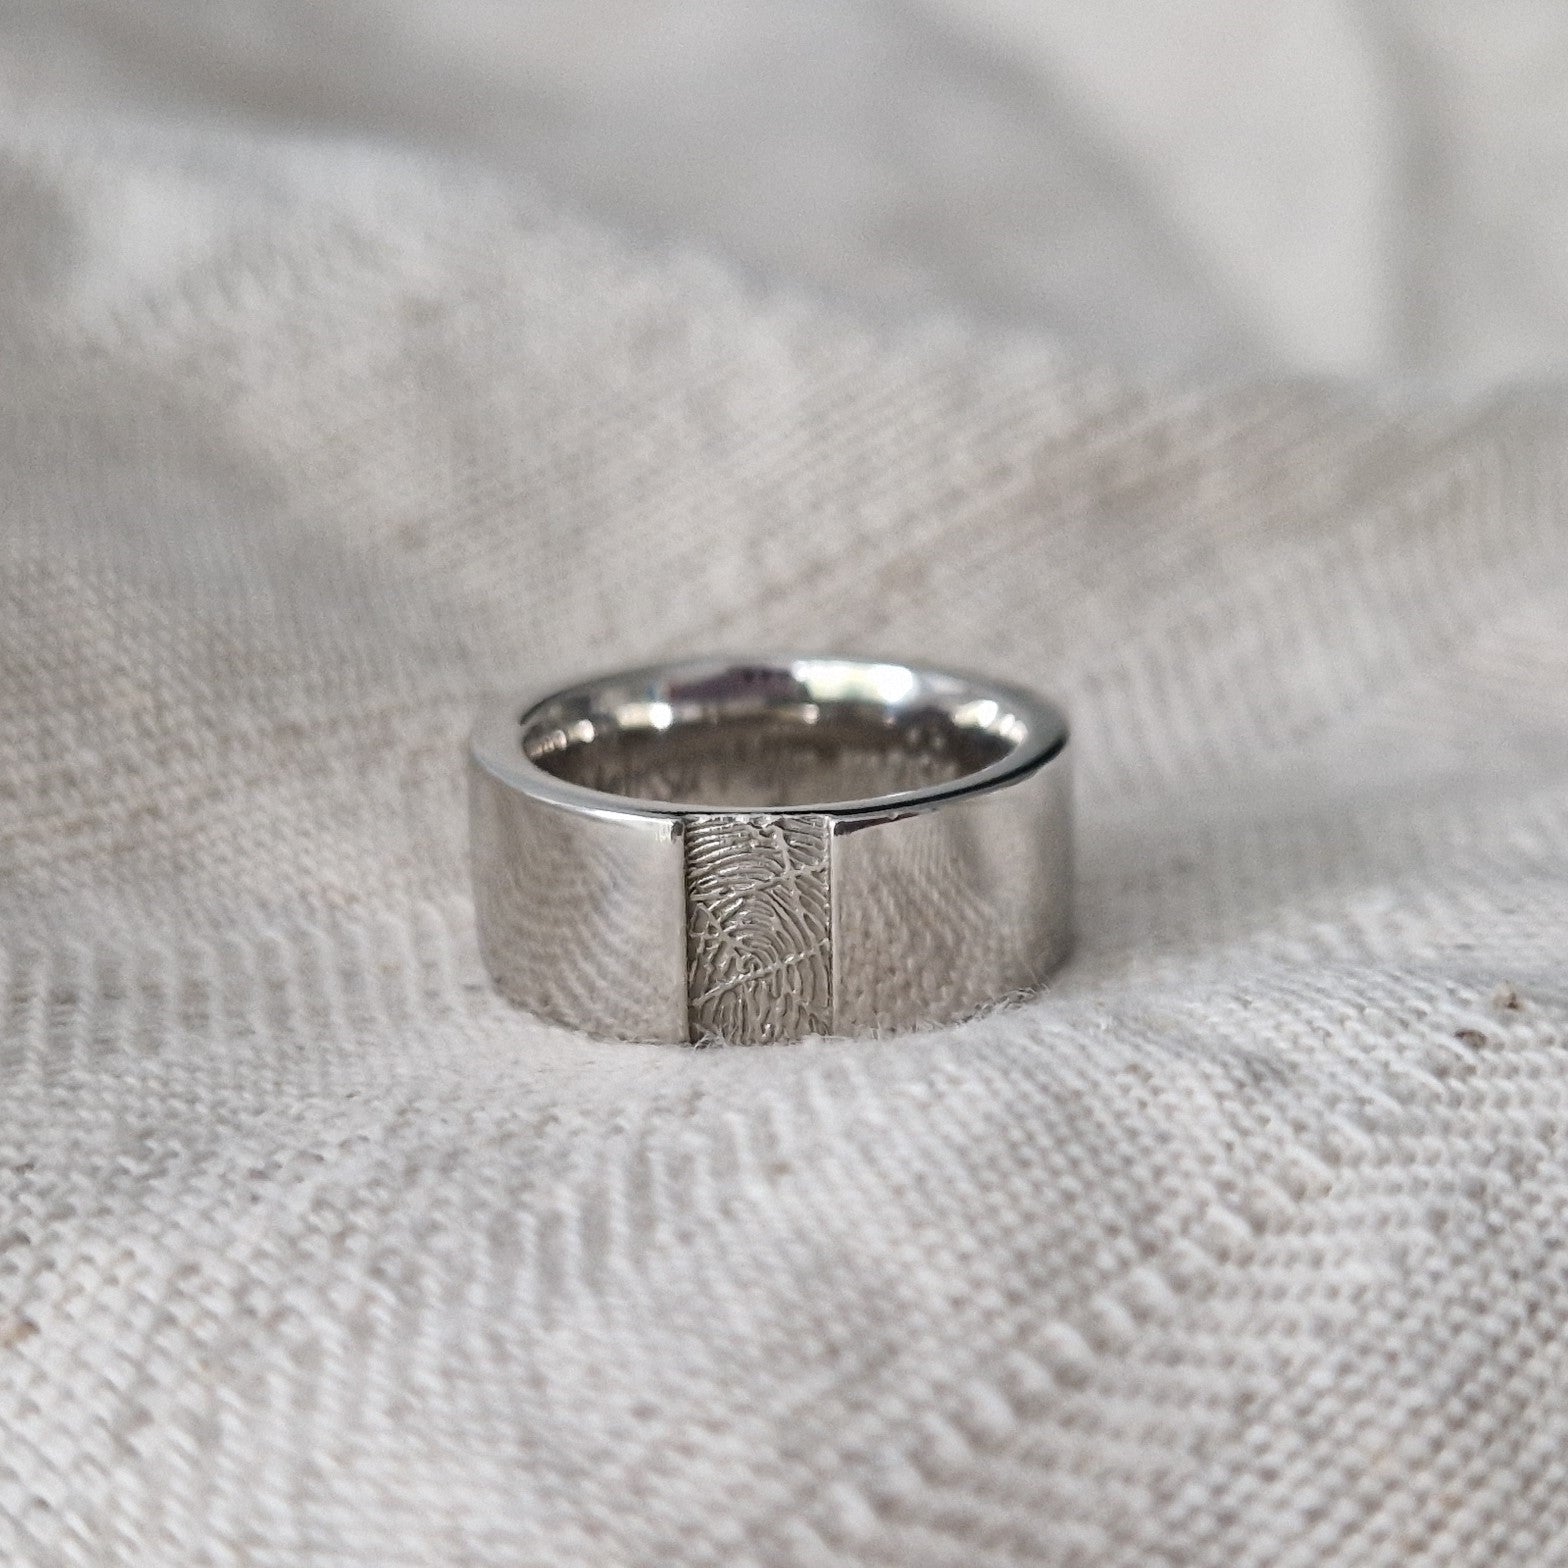 Ring 8 mm met een rechthoekig vlakje aan de voorzijde voorzien van een vingerafdruk. Alle